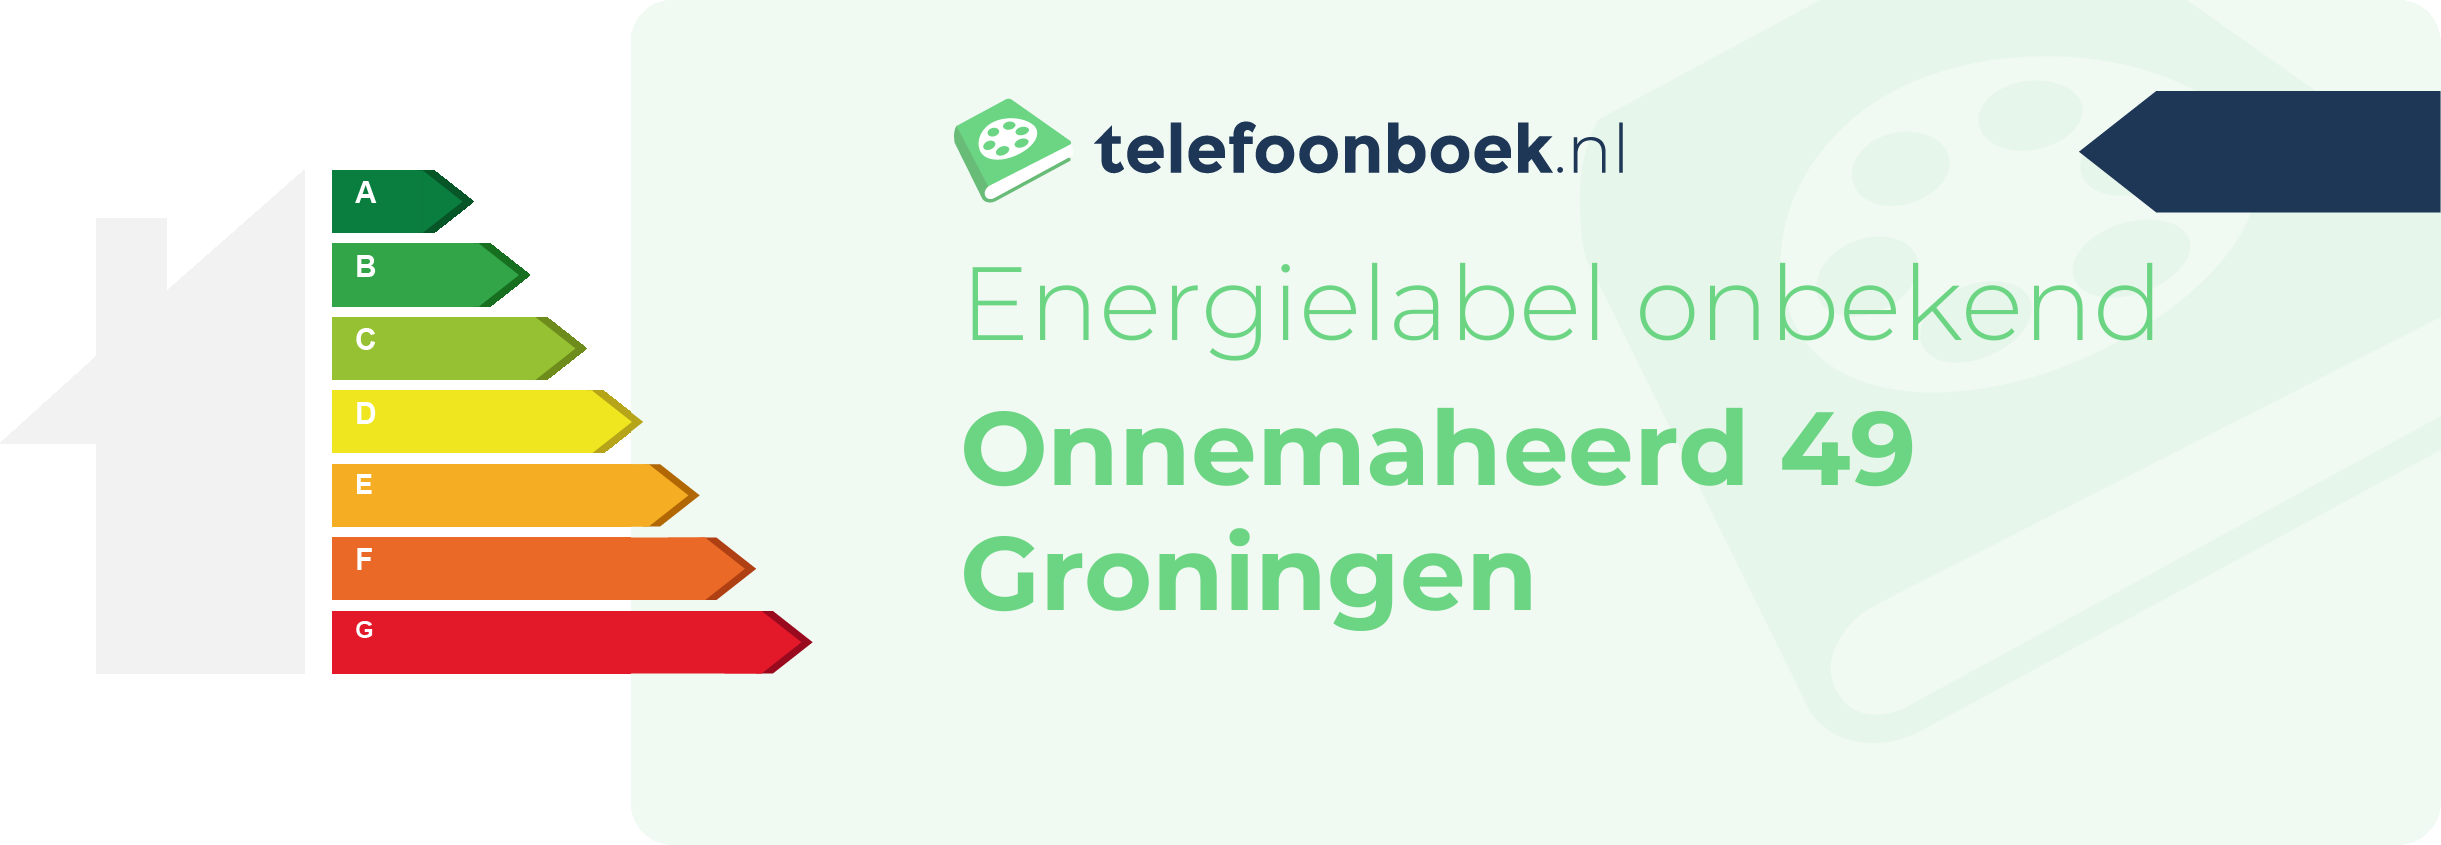 Energielabel Onnemaheerd 49 Groningen